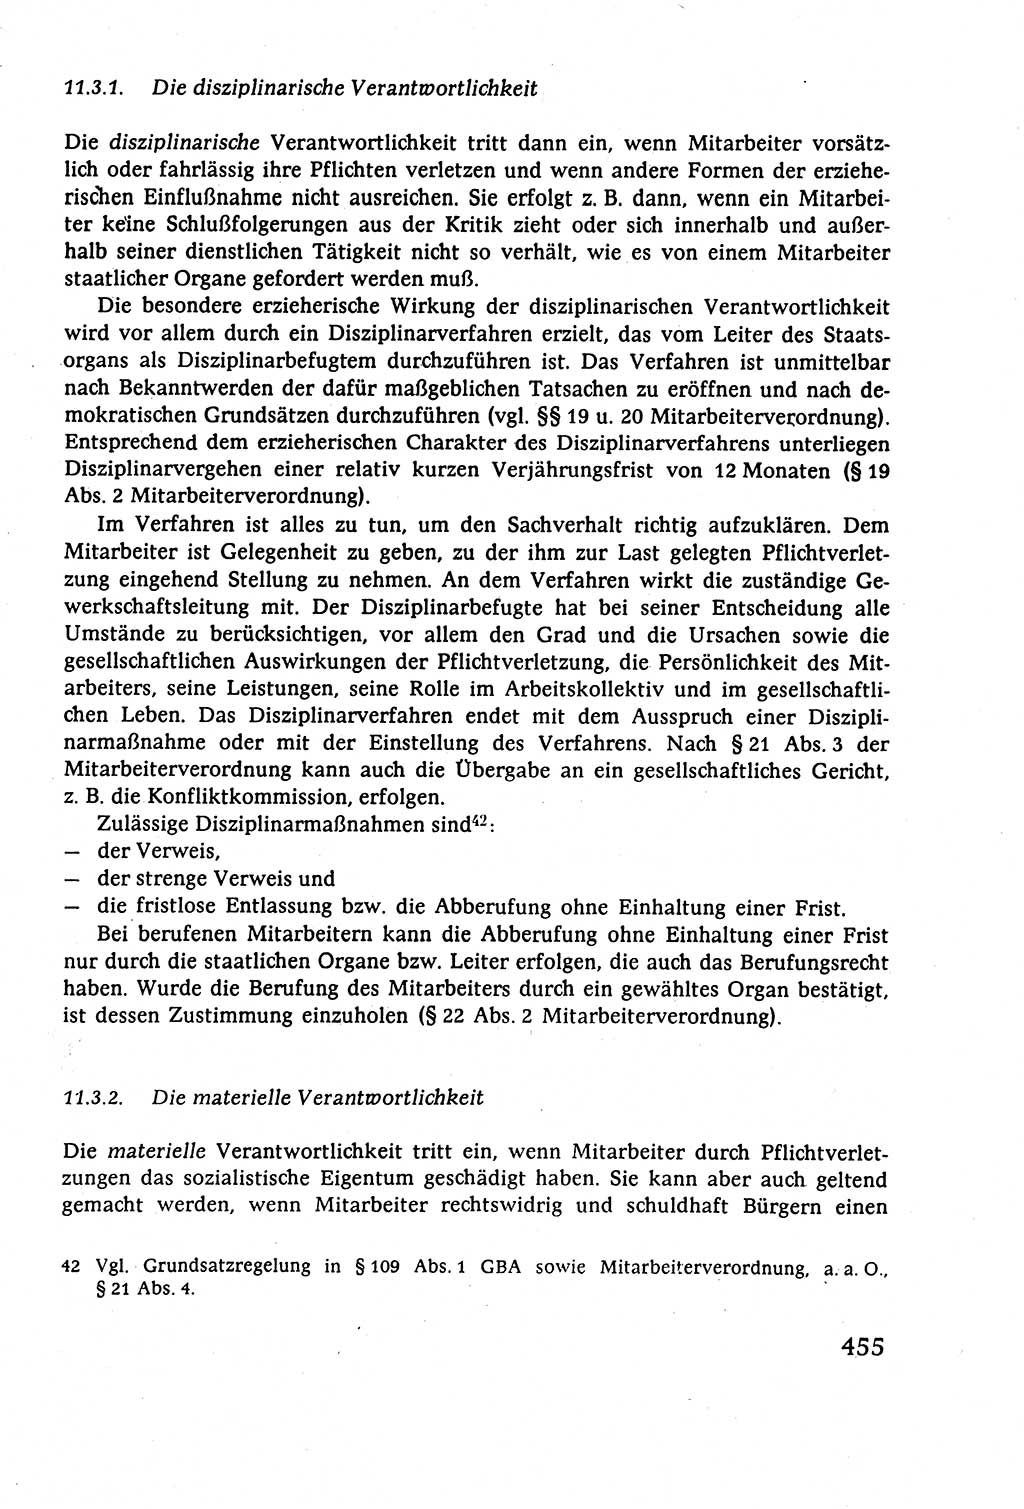 Staatsrecht der DDR (Deutsche Demokratische Republik), Lehrbuch 1977, Seite 455 (St.-R. DDR Lb. 1977, S. 455)